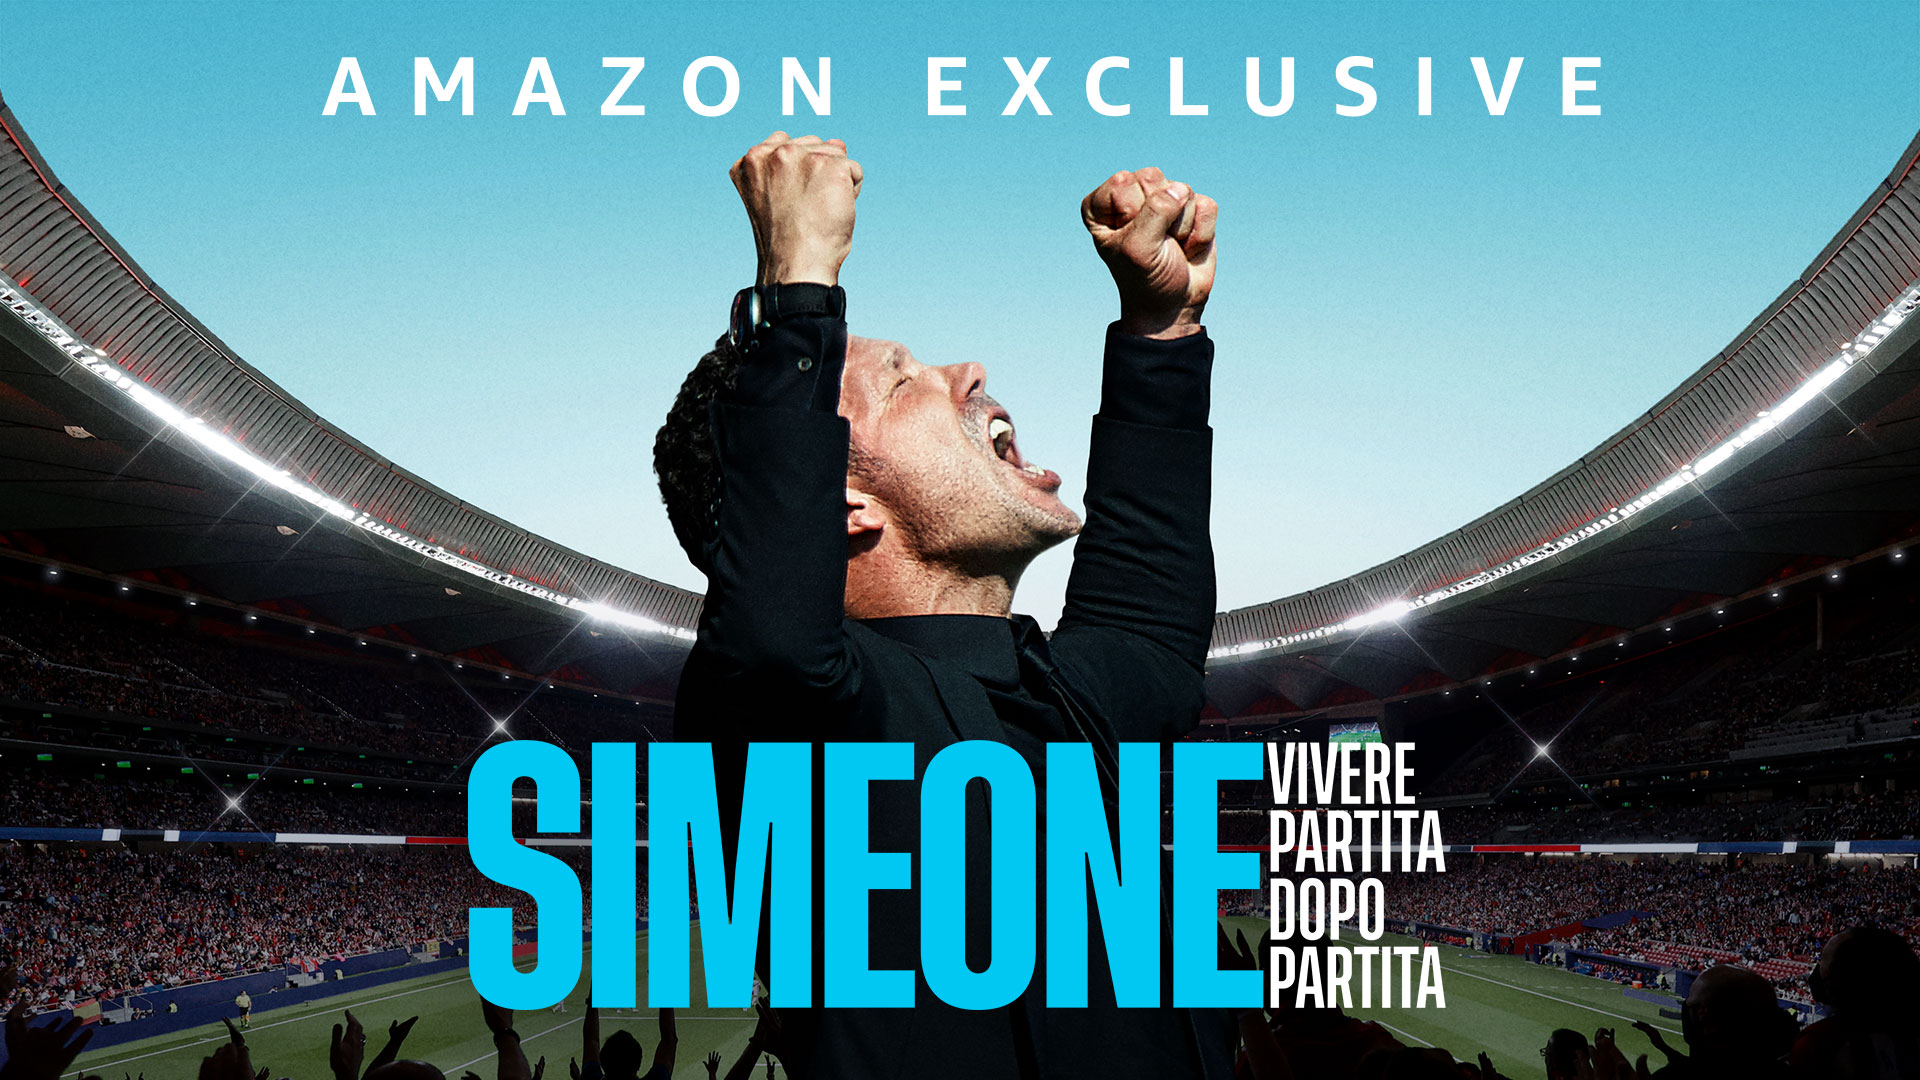 Diego Simeone si racconta oltre la docu-serie: “Il mio ricordo dell’Italia è meraviglioso”